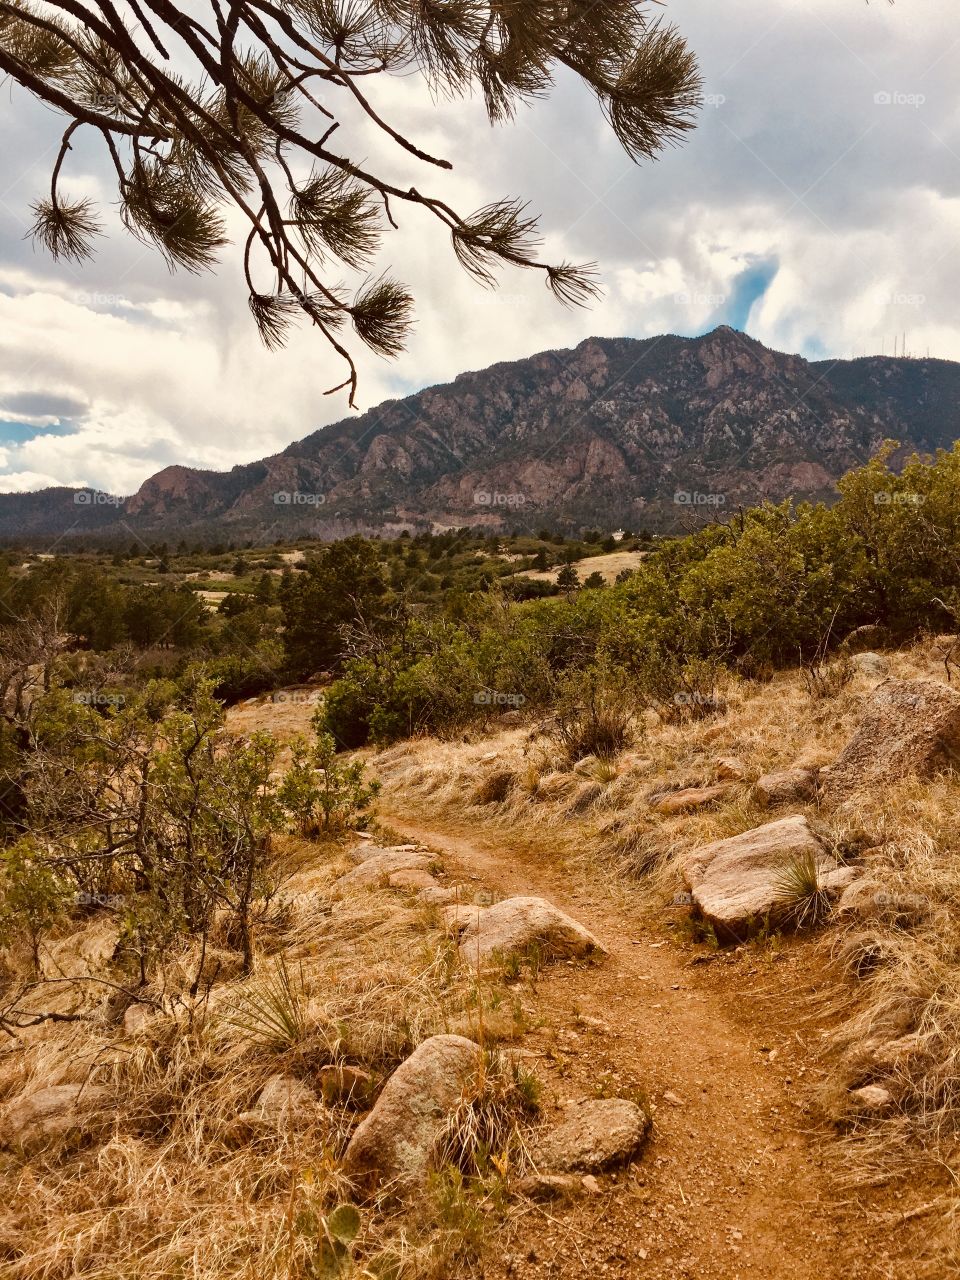 Cheyenne trail